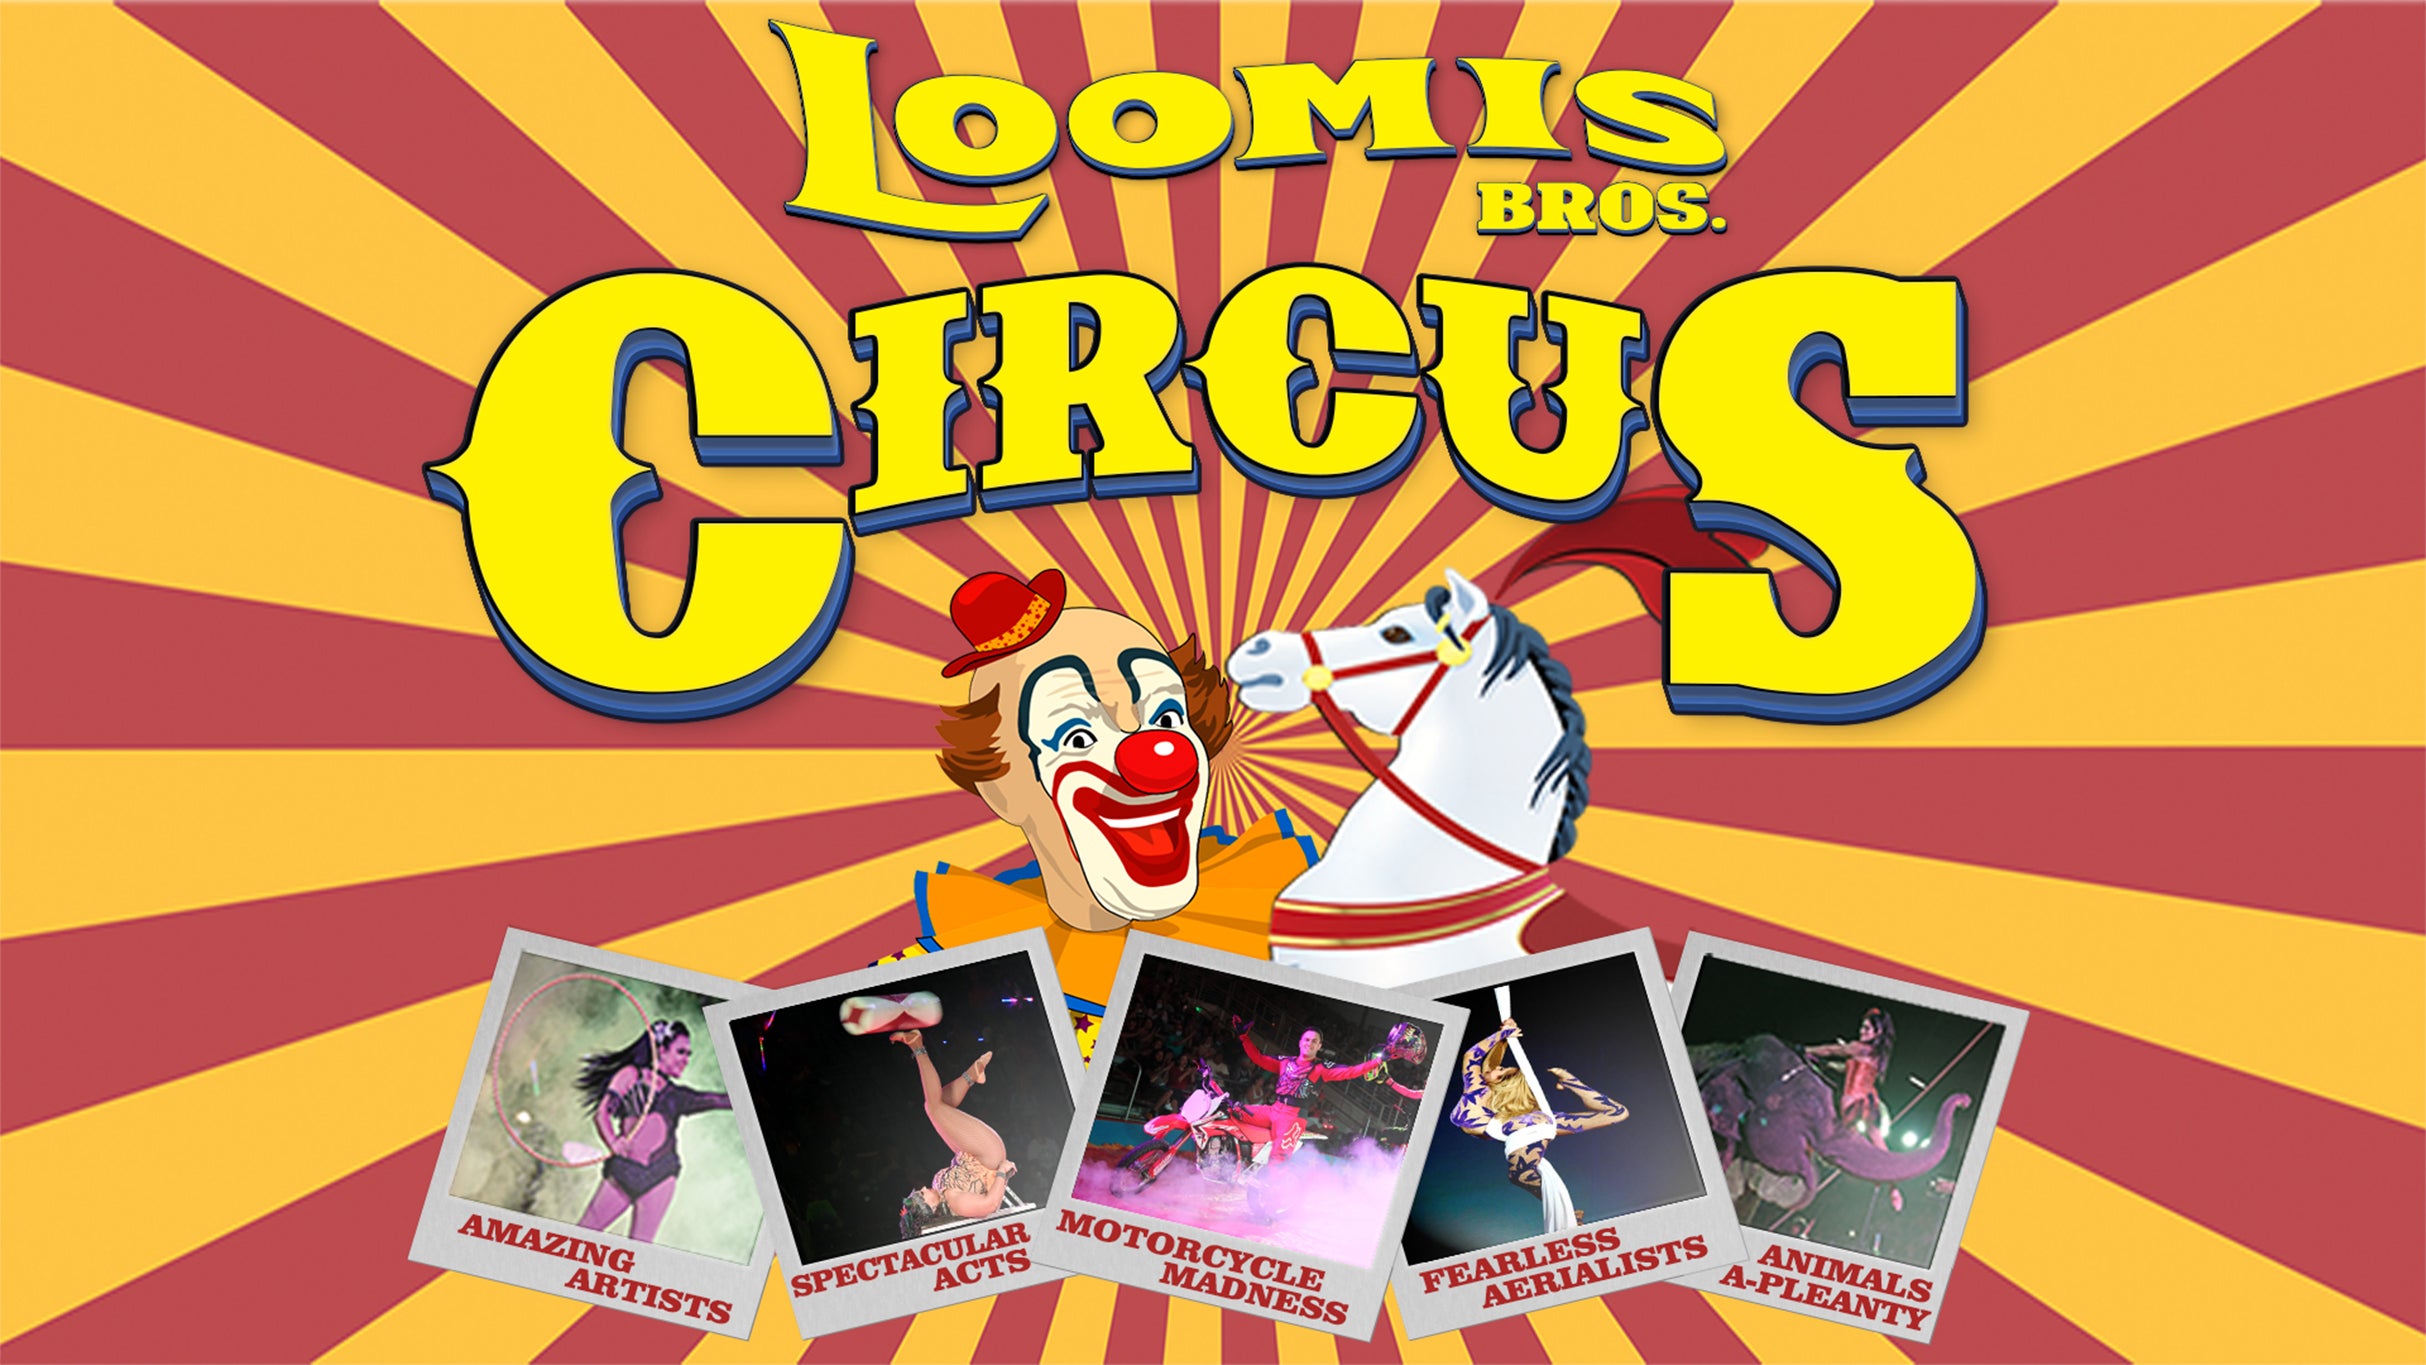 Loomis Bros. Circus - April 16 7:30pm at JAMES BROWN ARENA